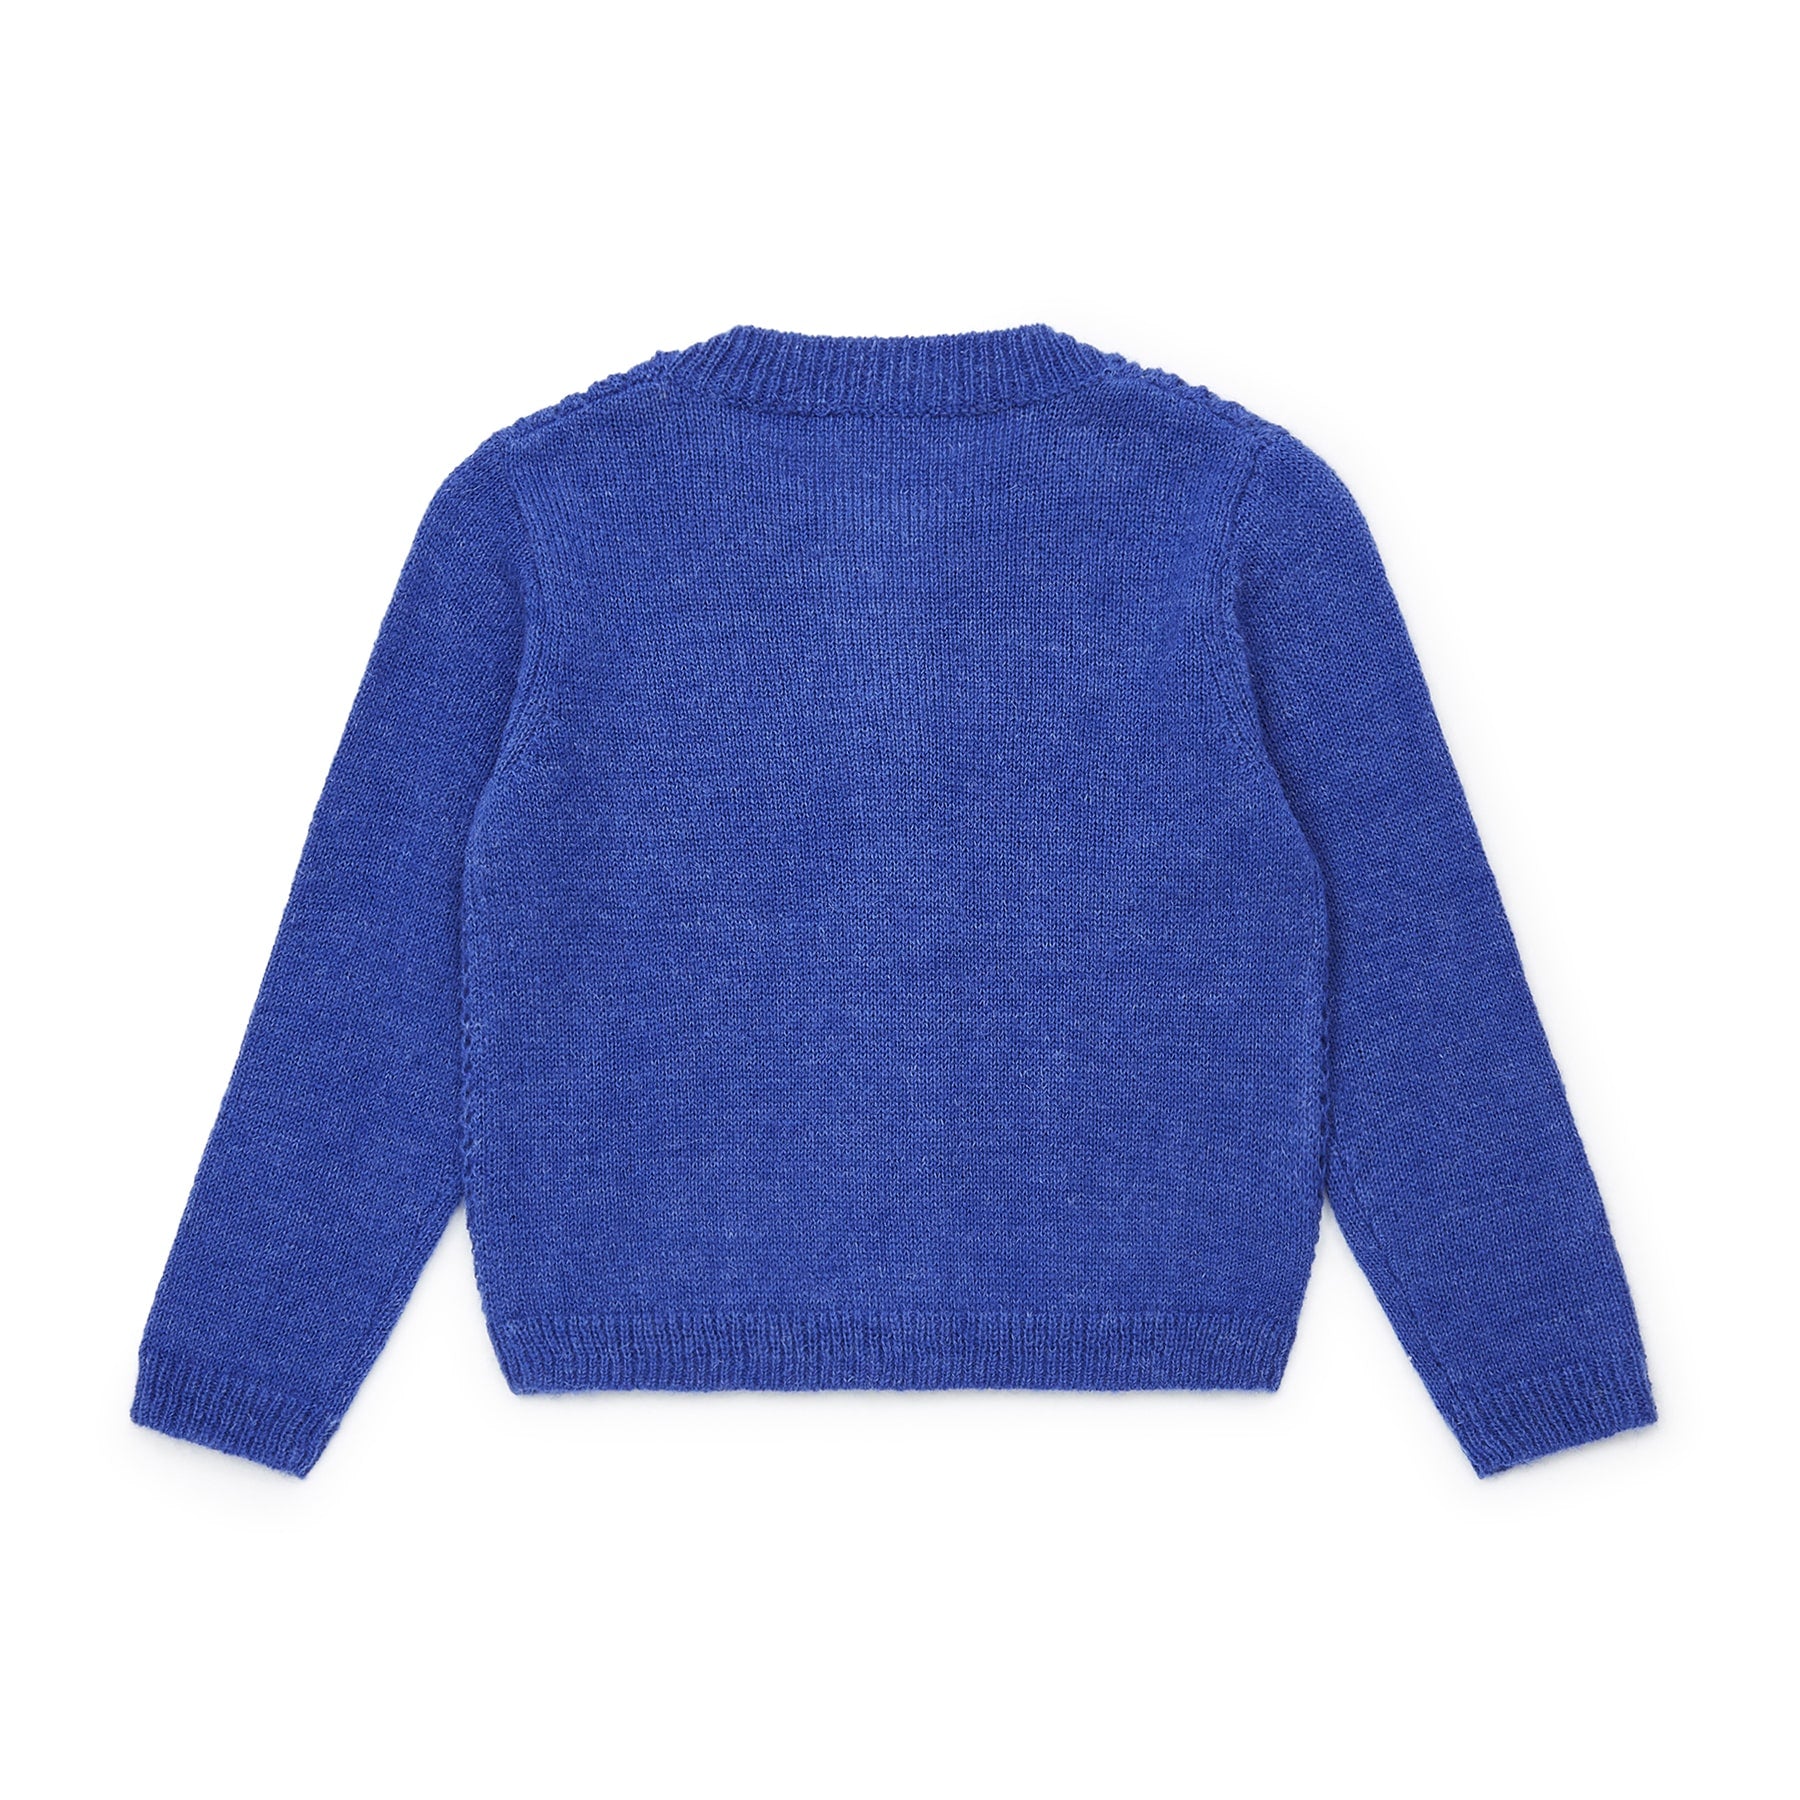 Boys Blue Knit Cardigan